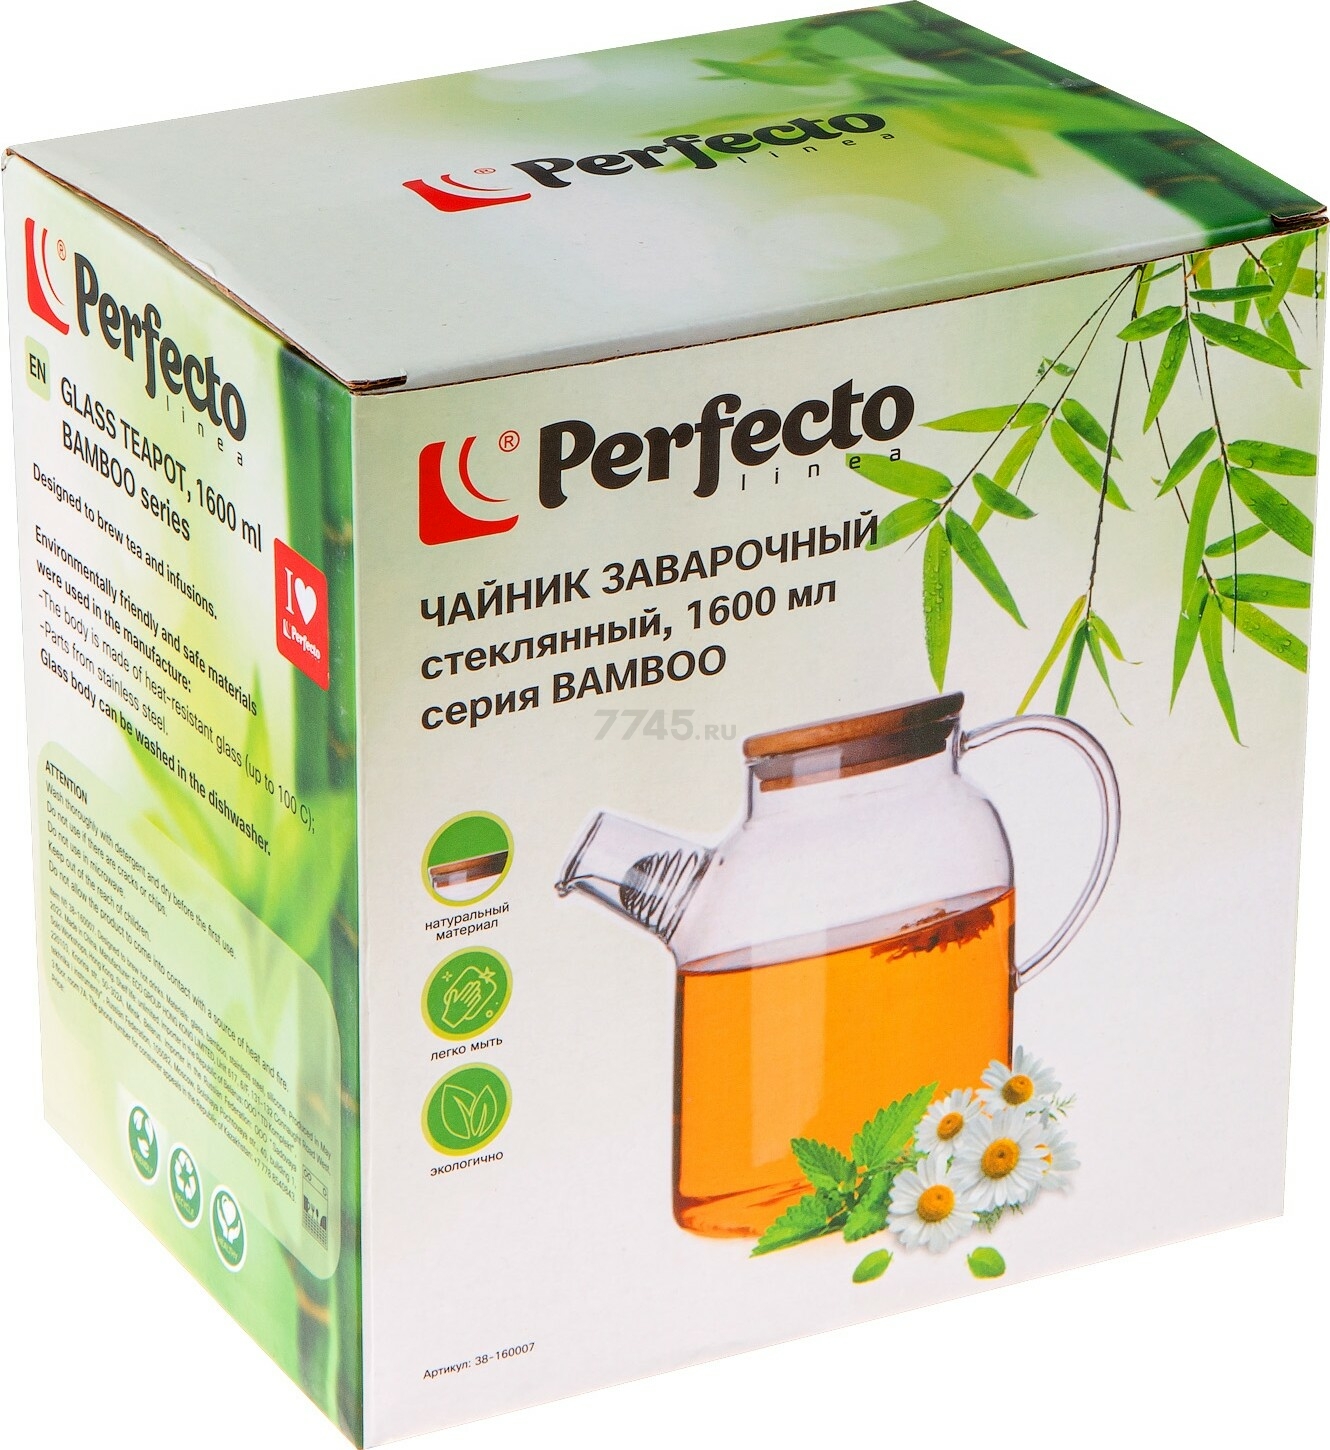 Заварочный чайник стеклянный PERFECTO LINEA Bamboo 1,6 л (38-160007) - Фото 2